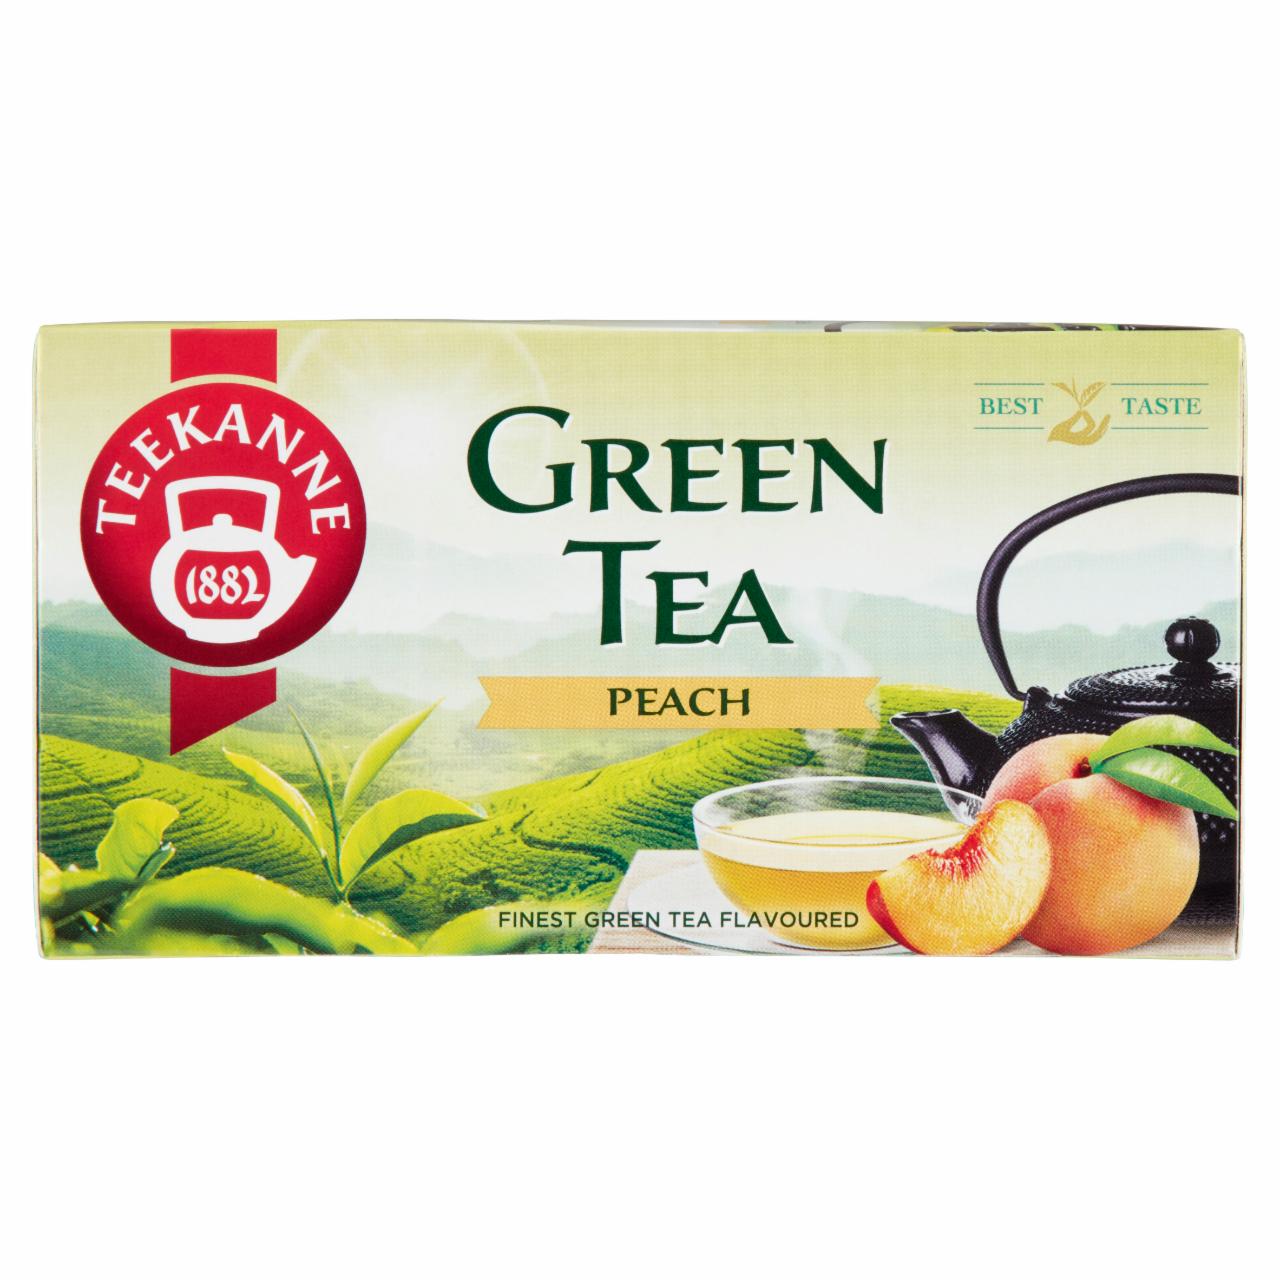 Képek - Teekanne őszibarack ízesítésű zöld teakeverék 20 filter 35 g